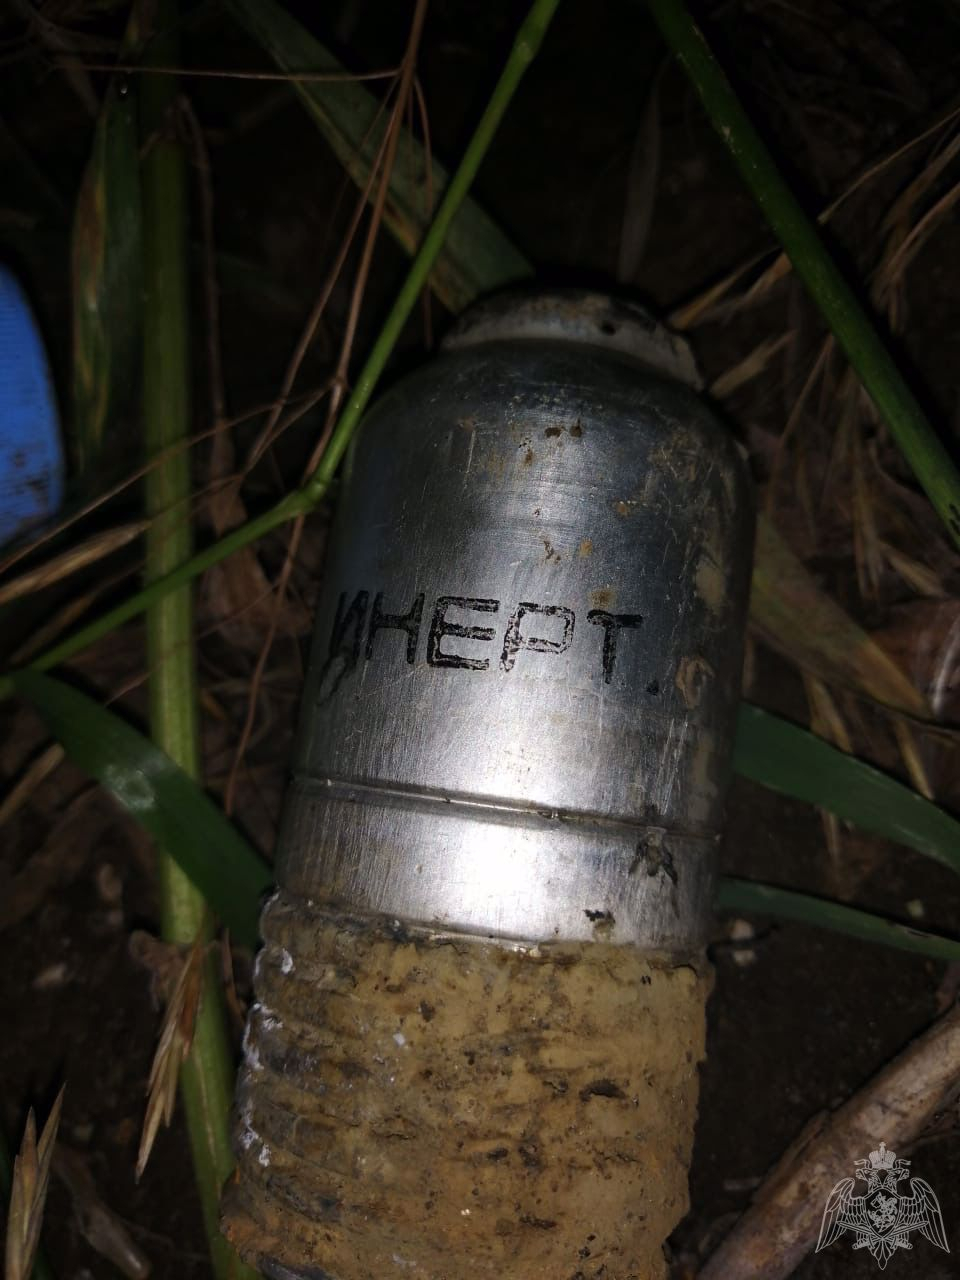 Хорошо, что не взорвалось: в Рязанской области обнаружили деталь гранатомёта